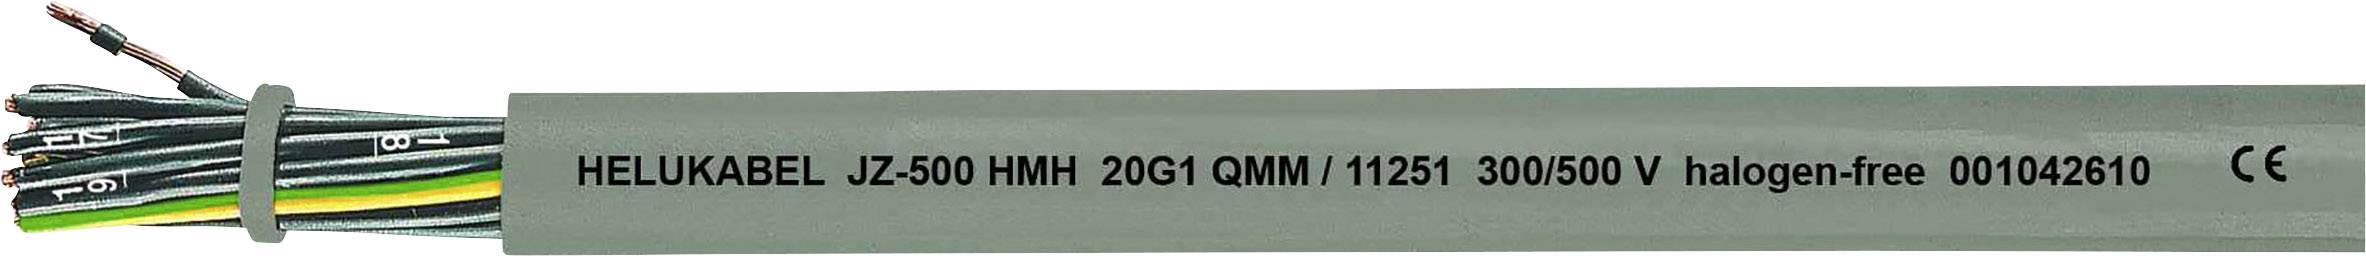 HELUKABEL JZ-500 HMH Steuerleitung 4 G 1 mm² Grau 11243-1000 1000 m